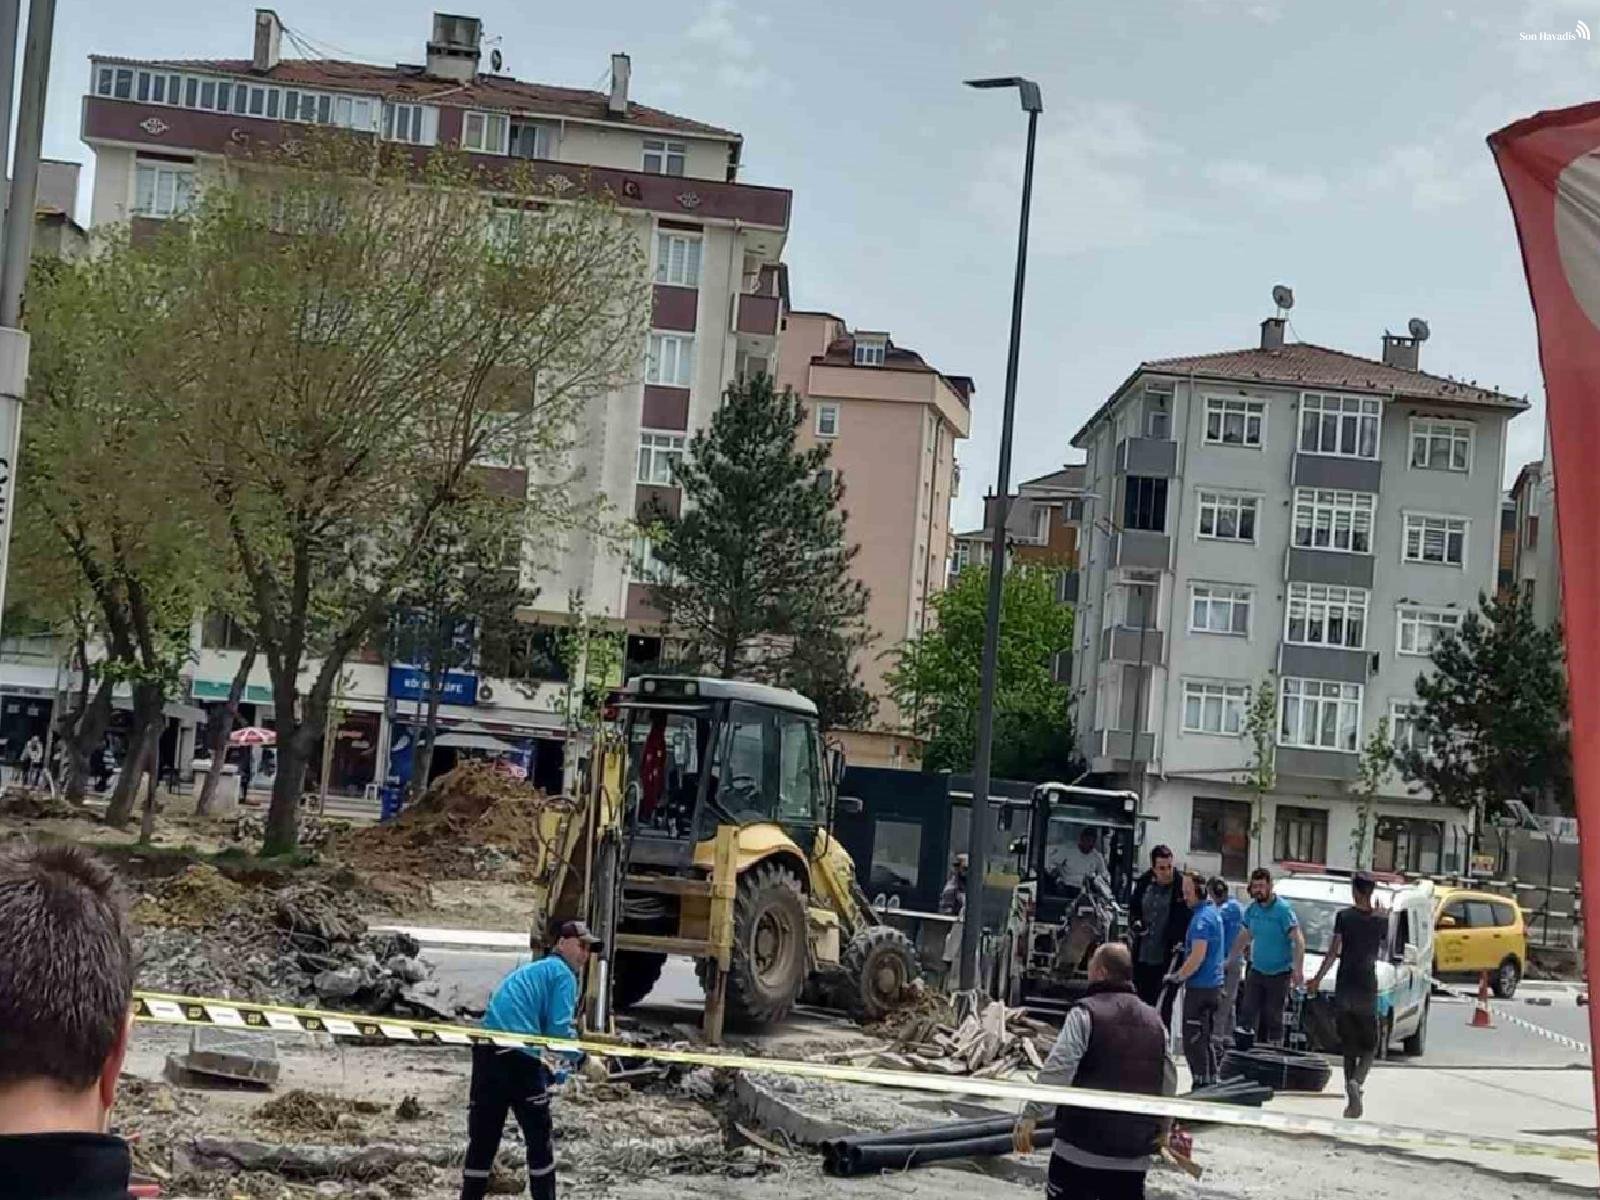 Doğal gaz borusunu patlattılar: Çerkezköy'de doğal gaz paniği